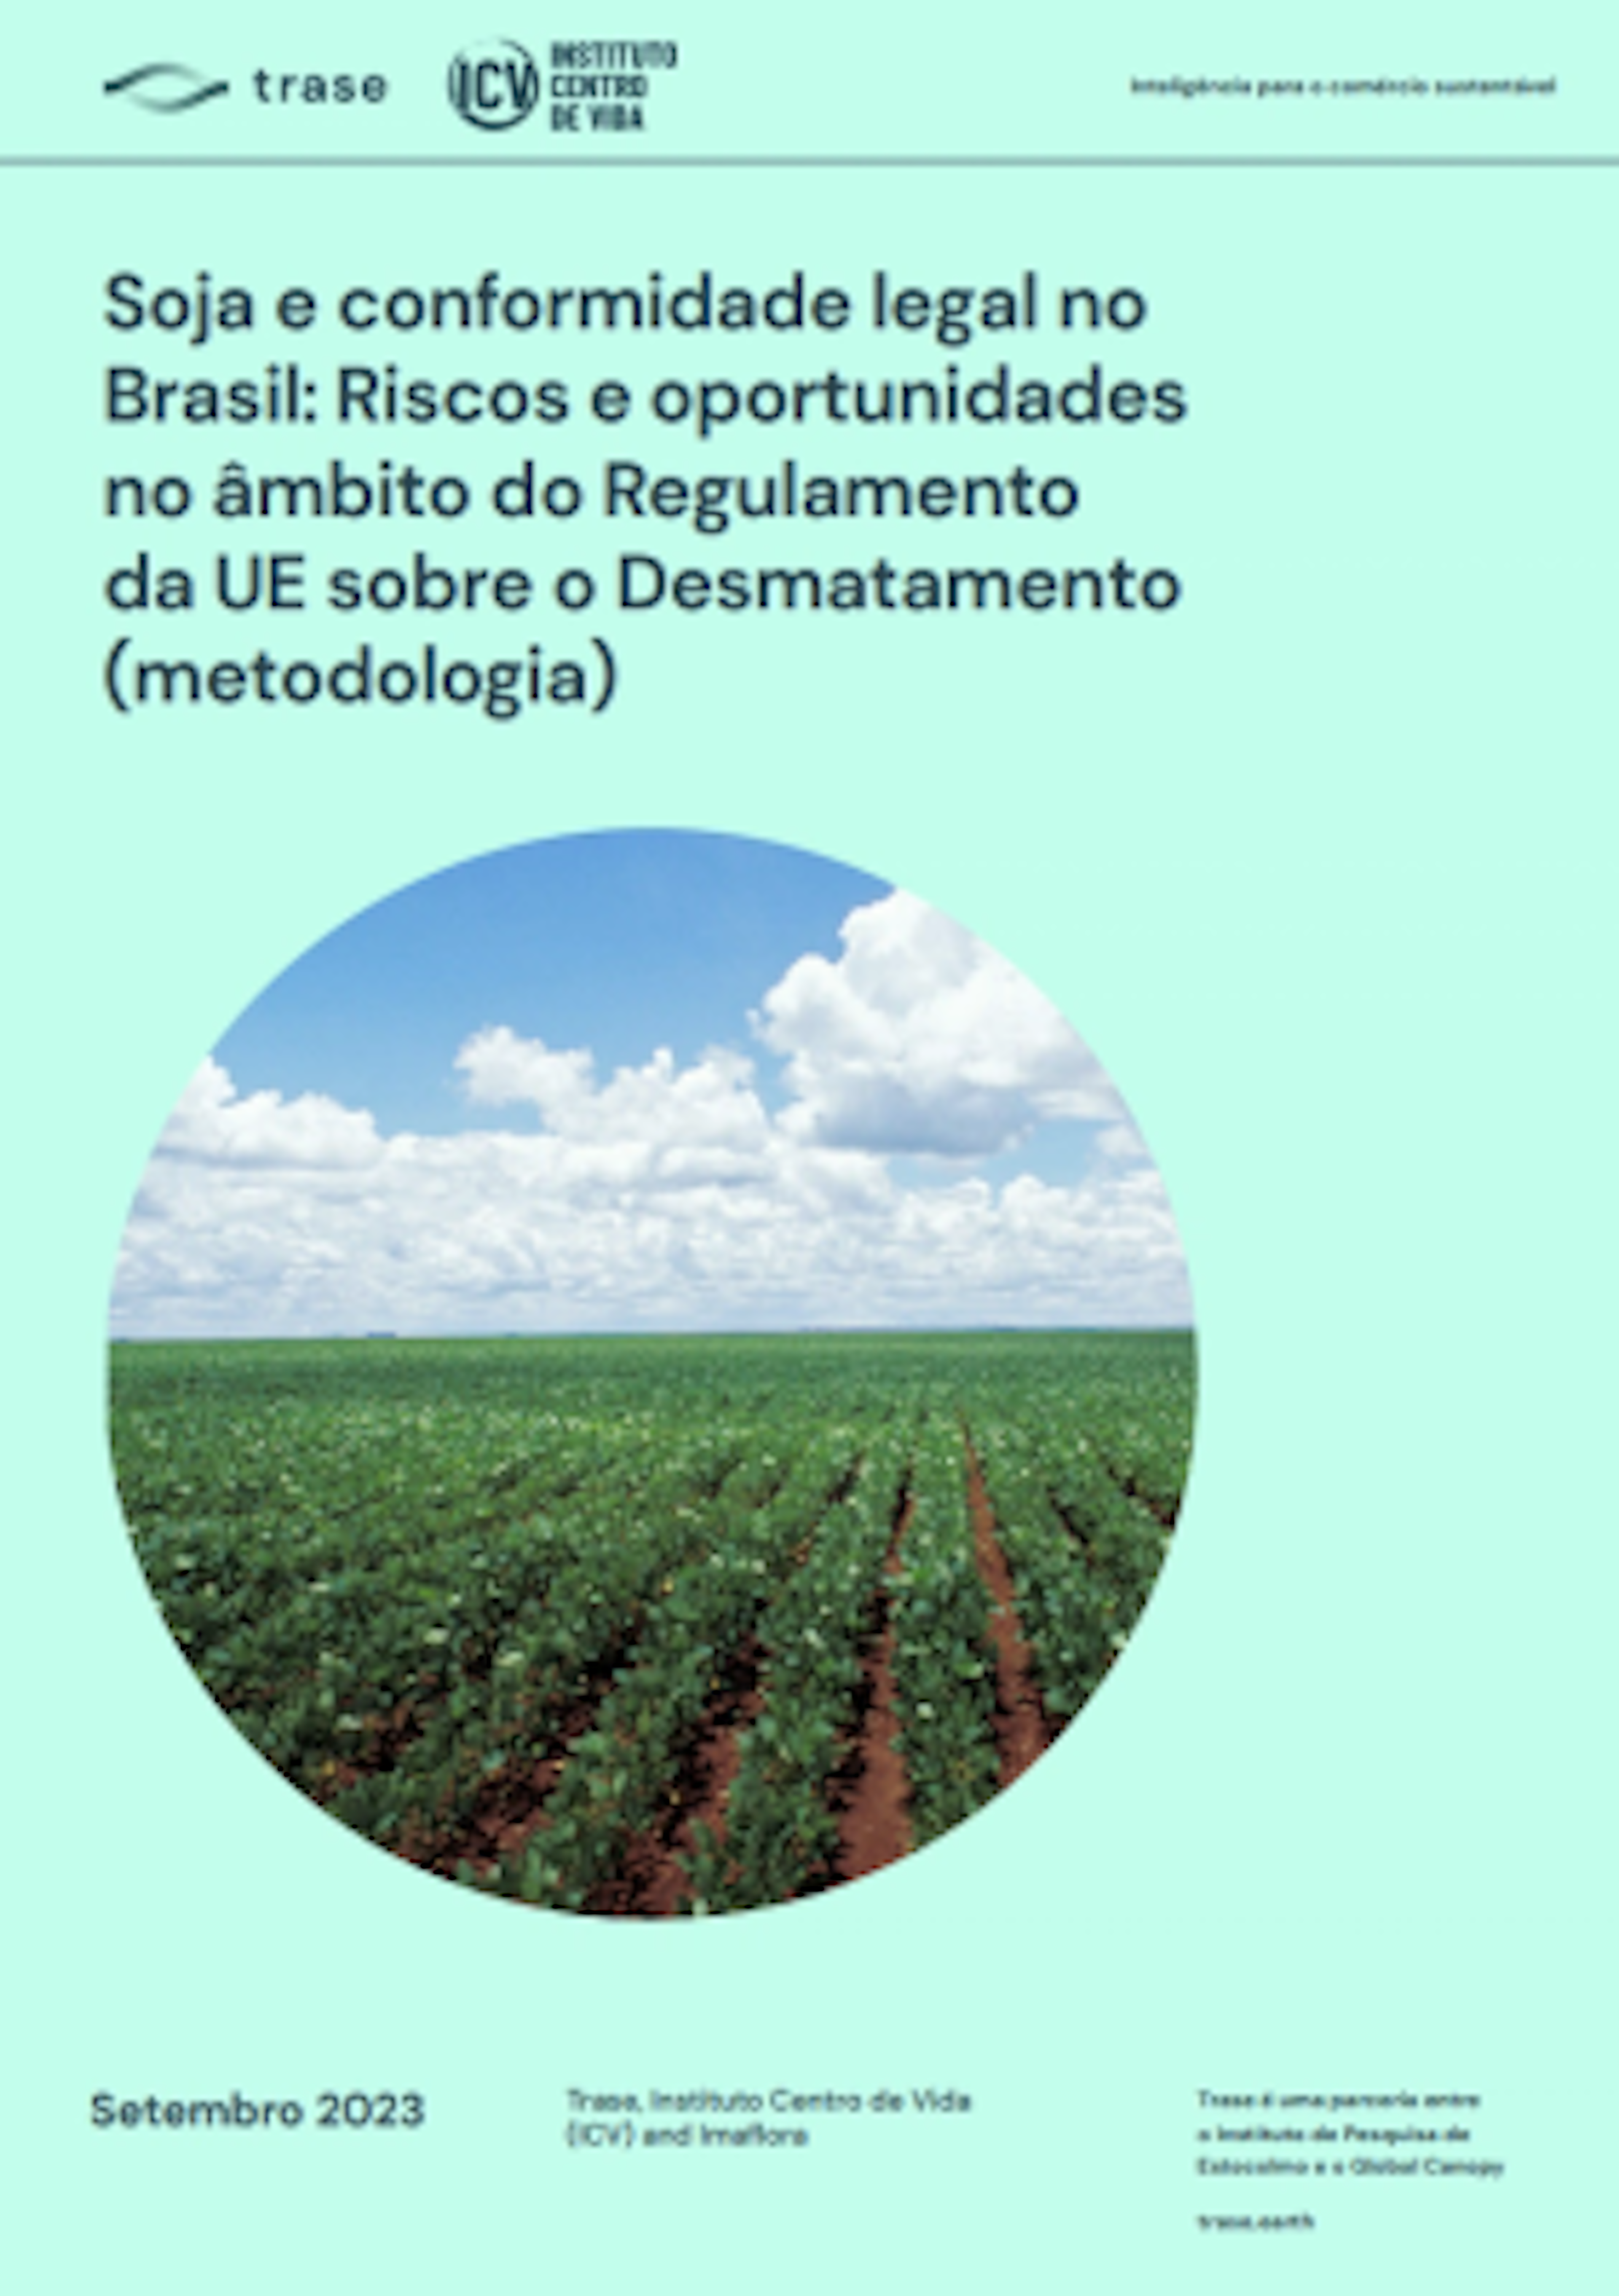 Soy field in Mato Grosso